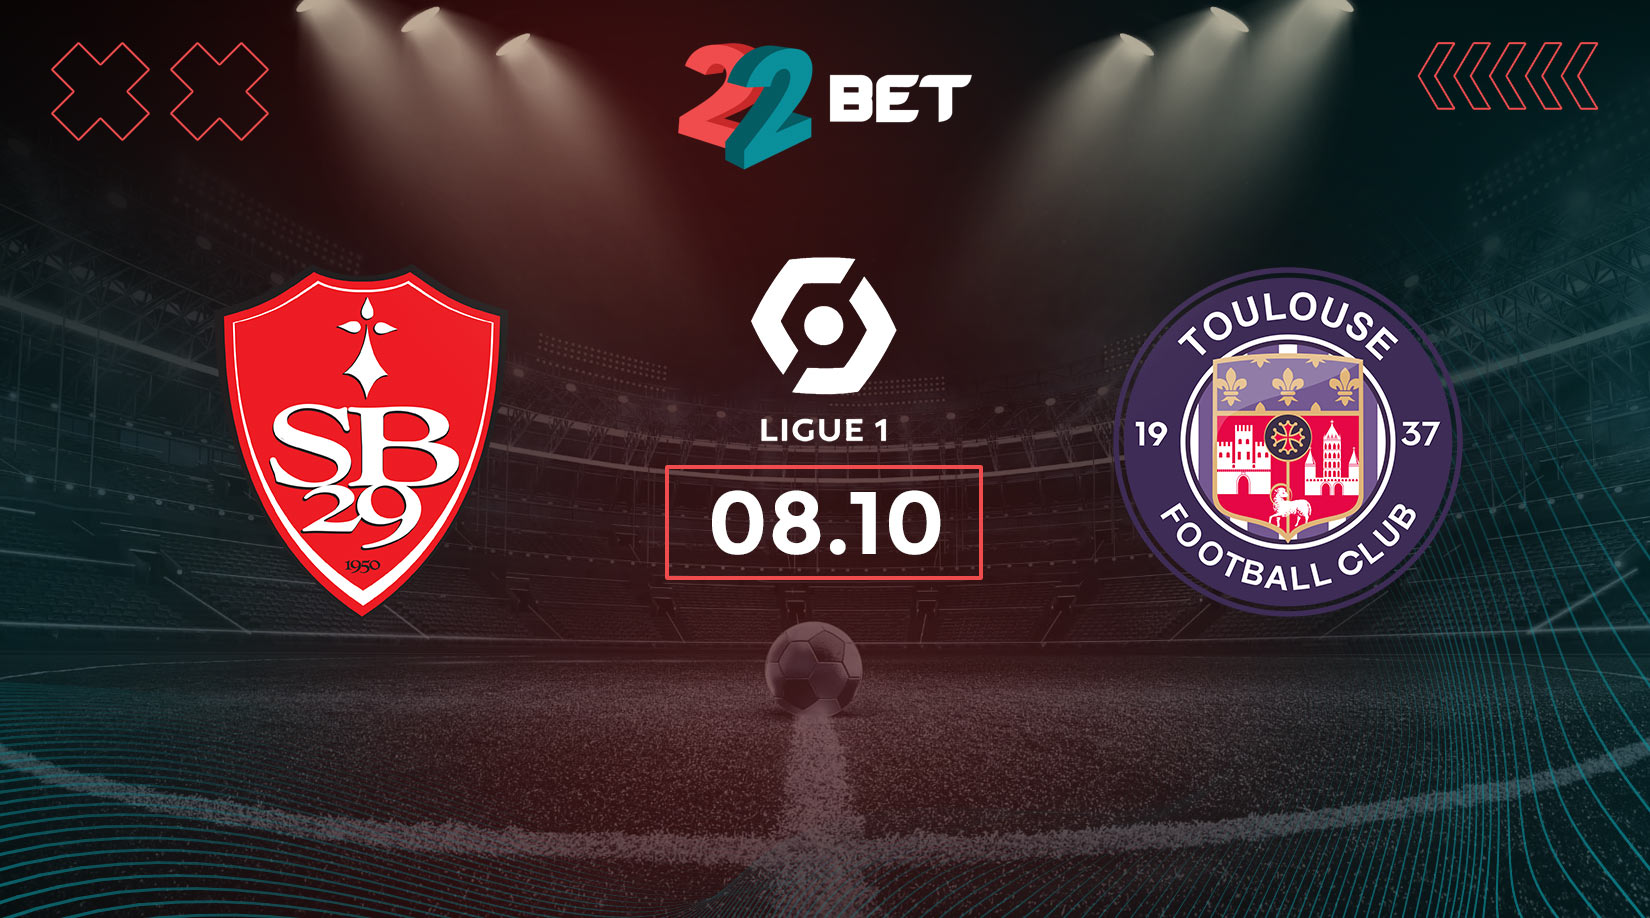 Stade Brestois 29 vs Toulous Prediction: Ligue 1 Match